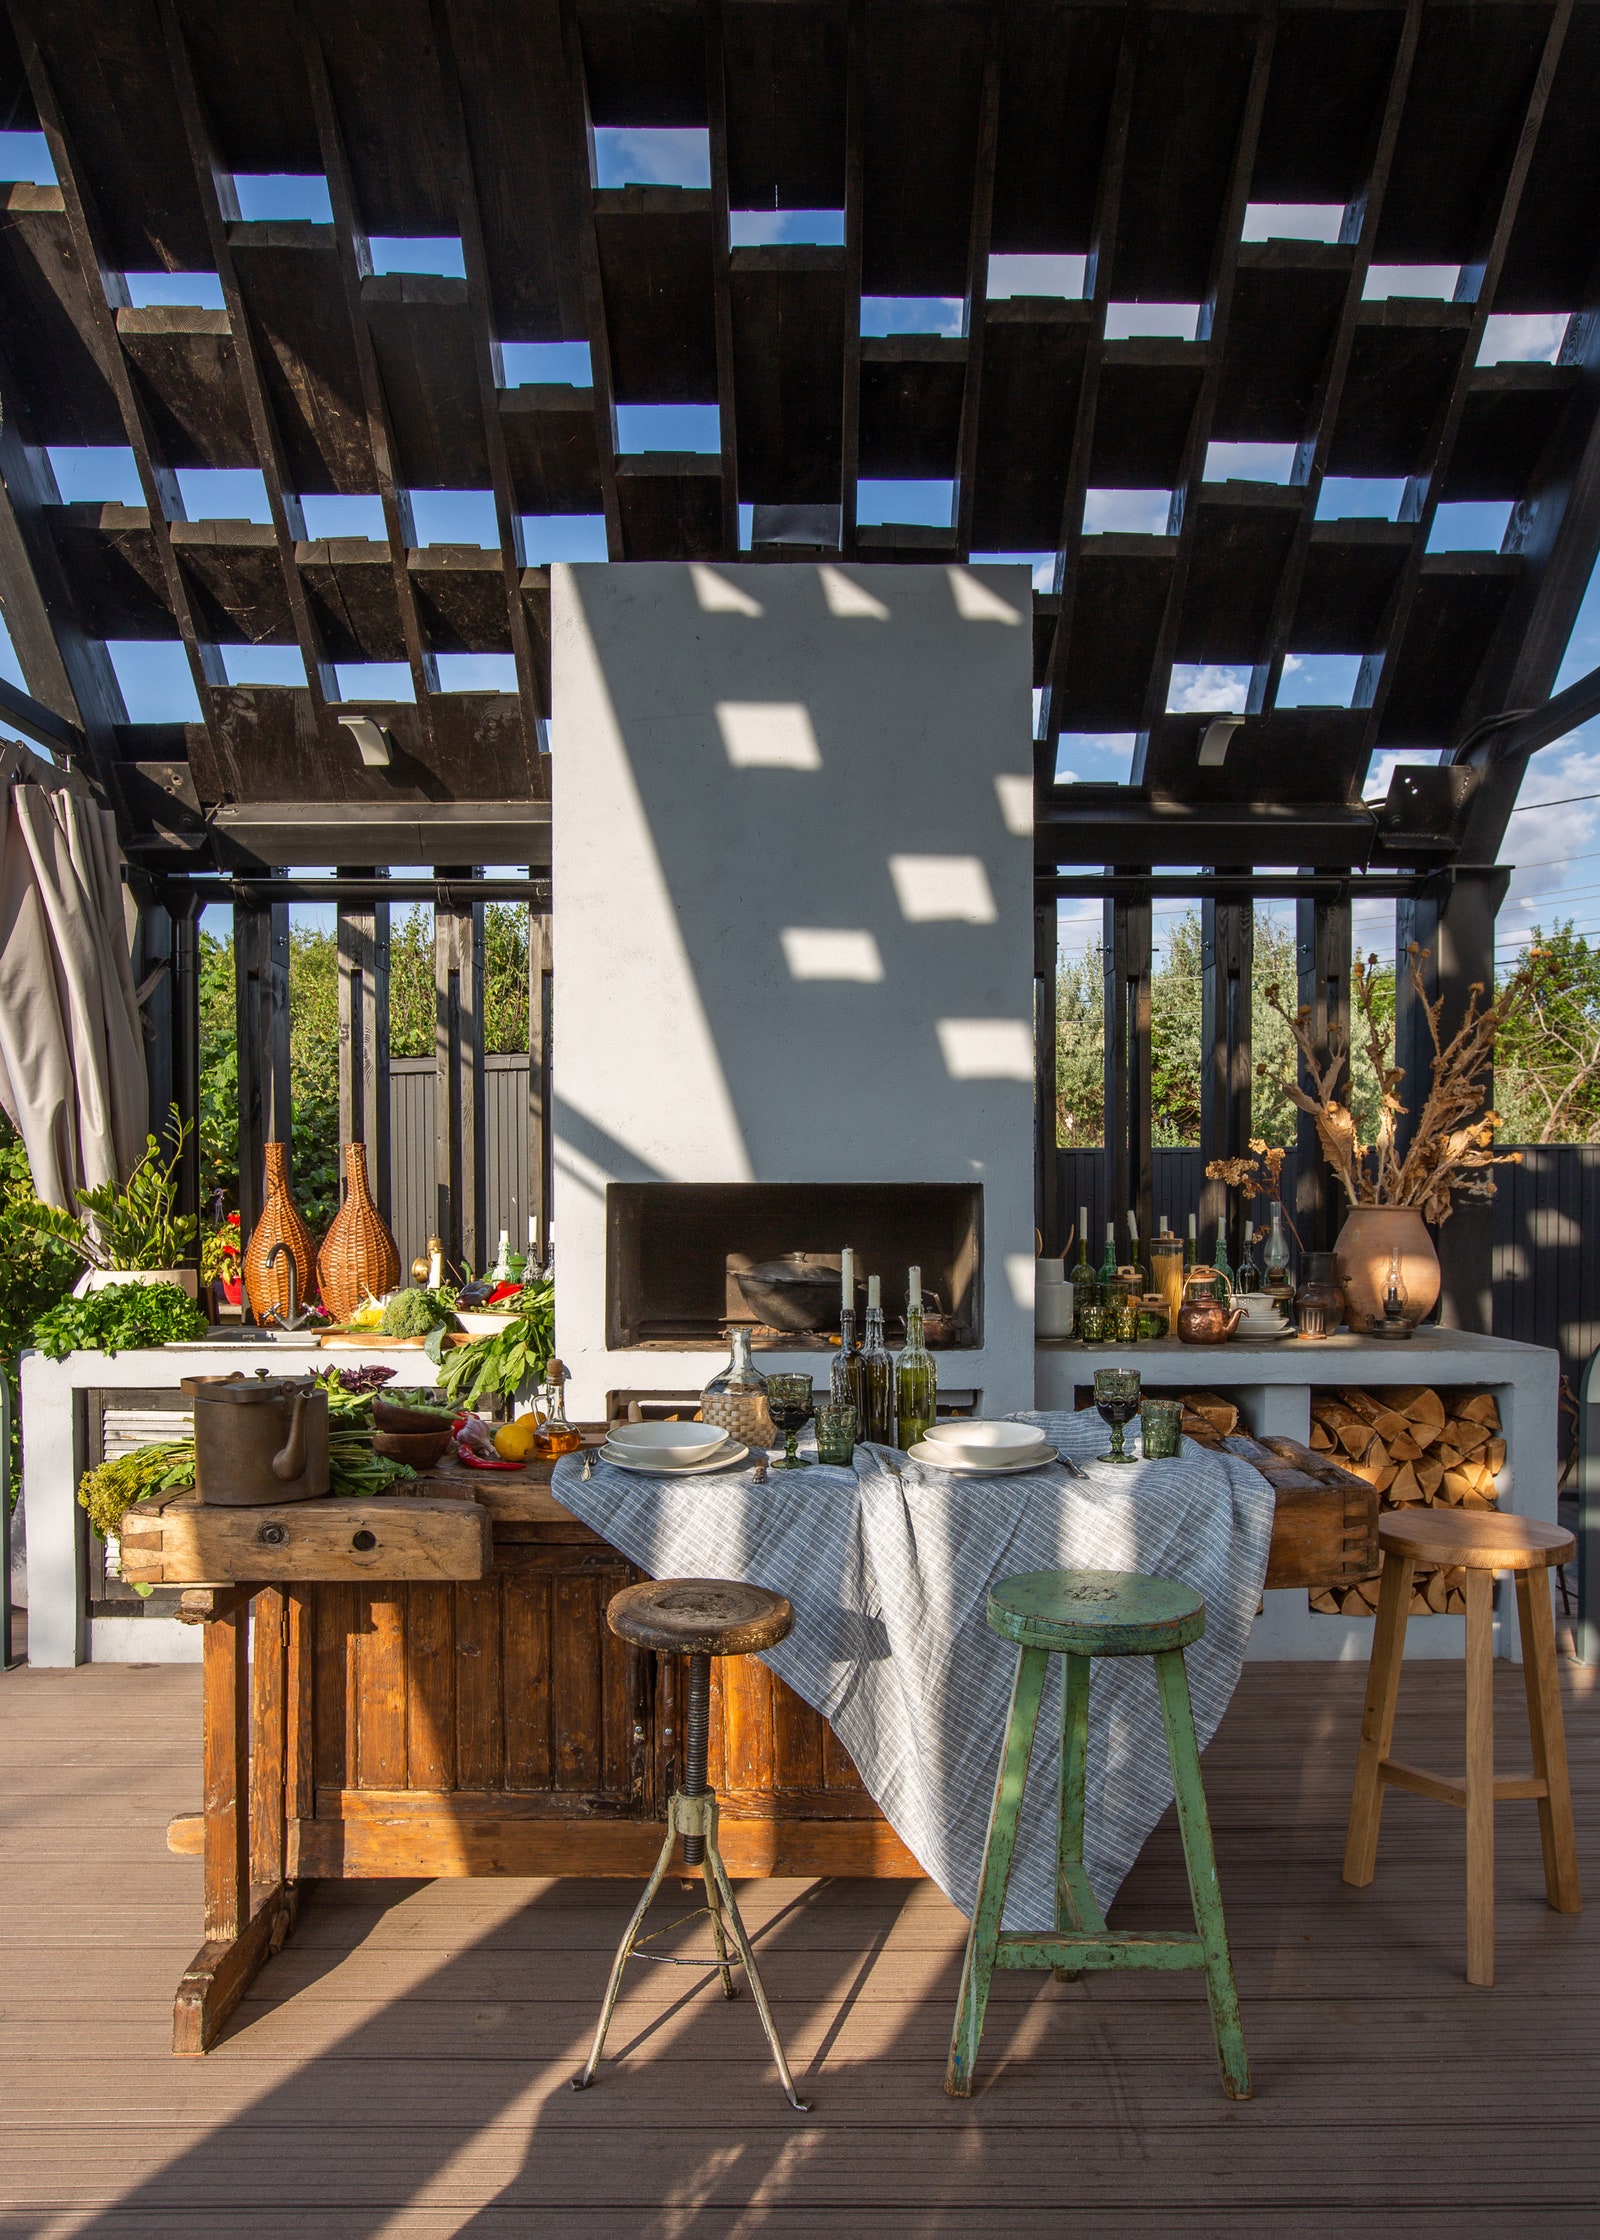 Зона кухни и столовой на террасе по проекту Натальи Беспаловой. Деревянная крыша защищает от солнца но сквозь отверстия...